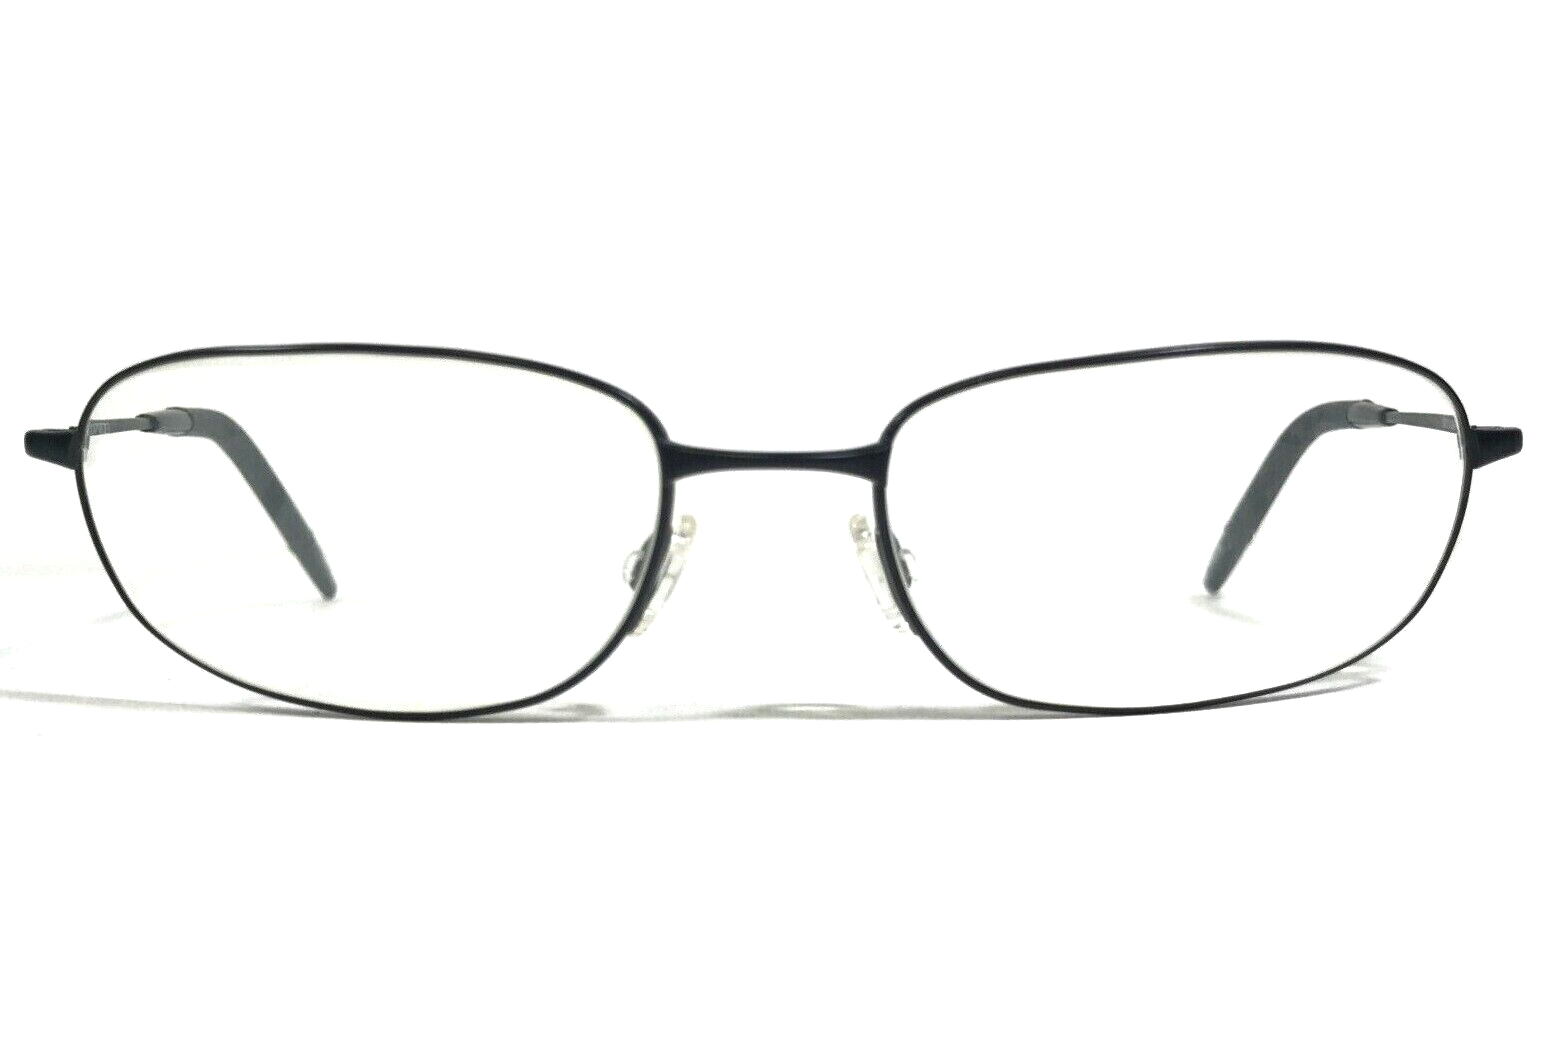 Primary image for Oliver Peoples Eyeglasses Frames Chip MBK Matte Black Wrap Full Rim 58-18-125